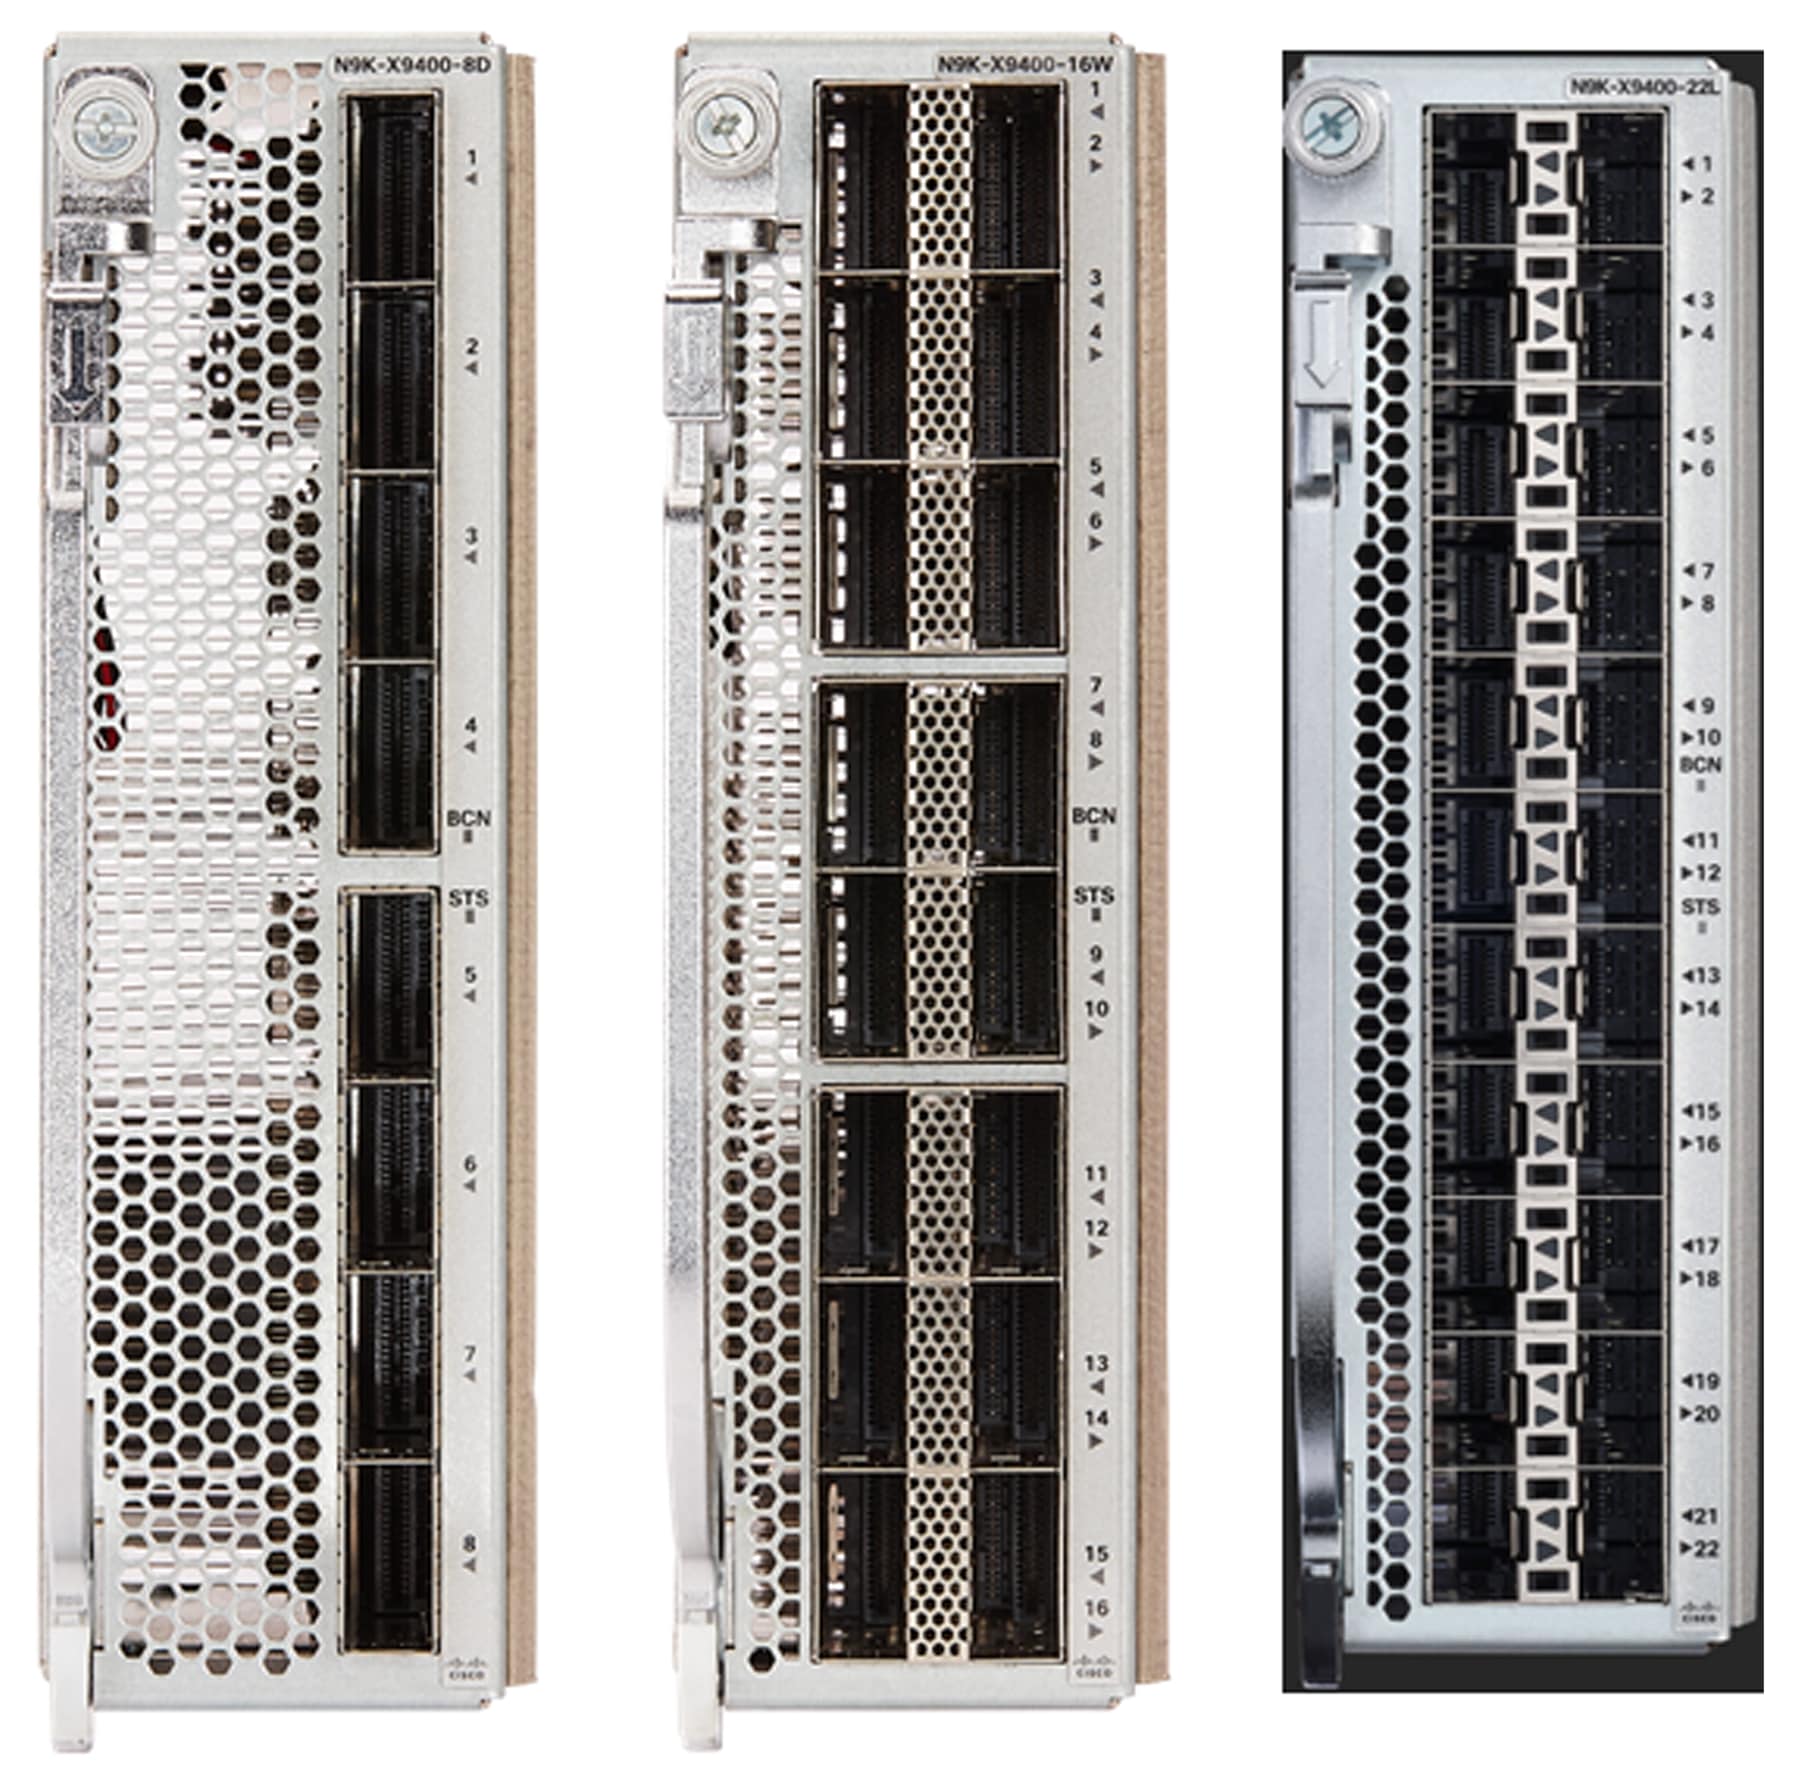 Cisco Nexus 9400 Series LEMs (N9K-X9400-8D, N9K-X9400-16W, and N9K-X9400-22L)